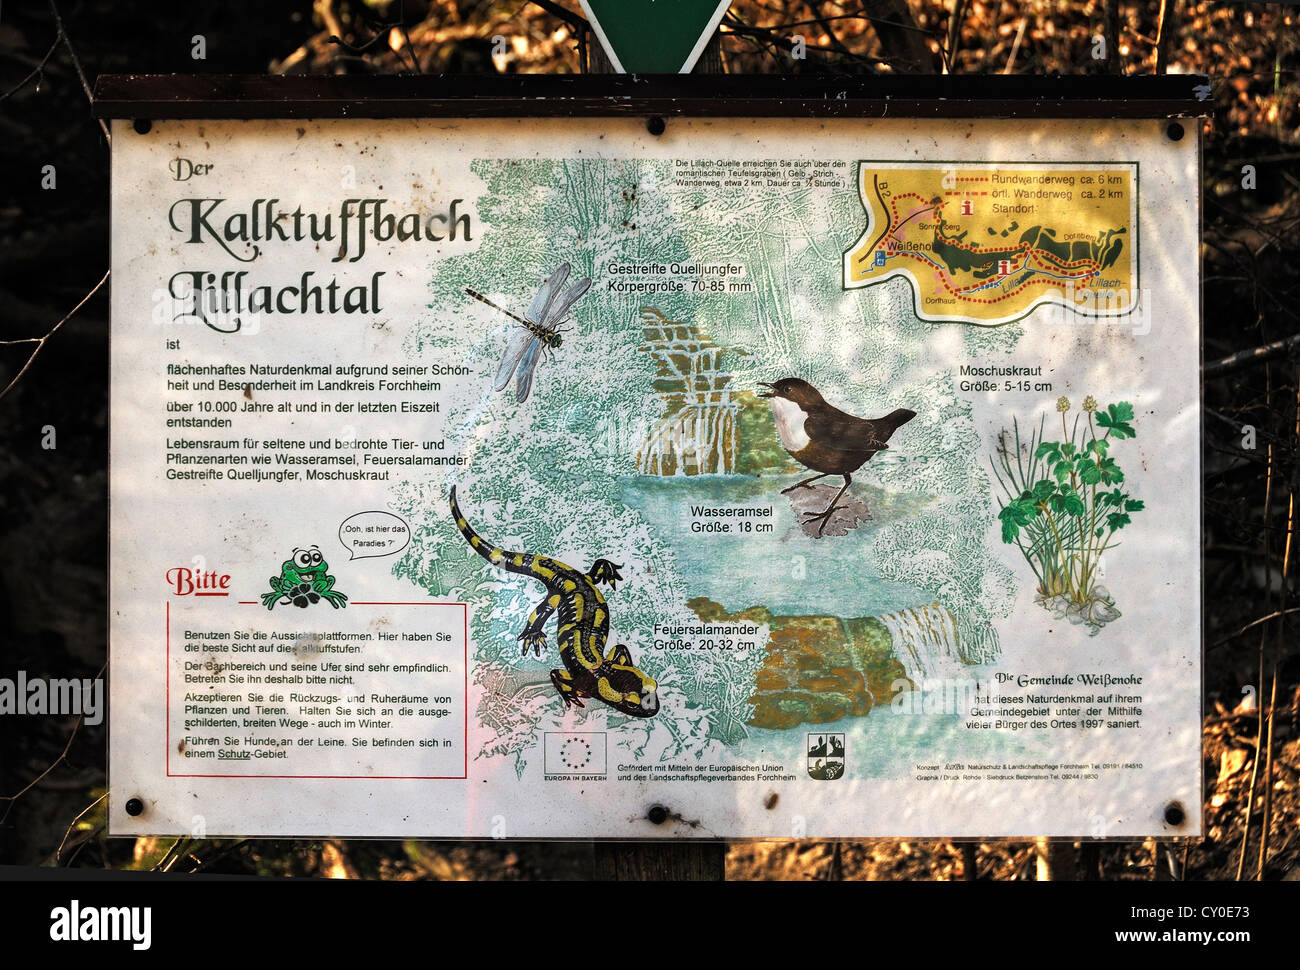 Scheda di informazioni circa la Kalktuffbach creek e gli animali che vivono nella Lillingquelle area di conservazione, Dorfhaus Foto Stock